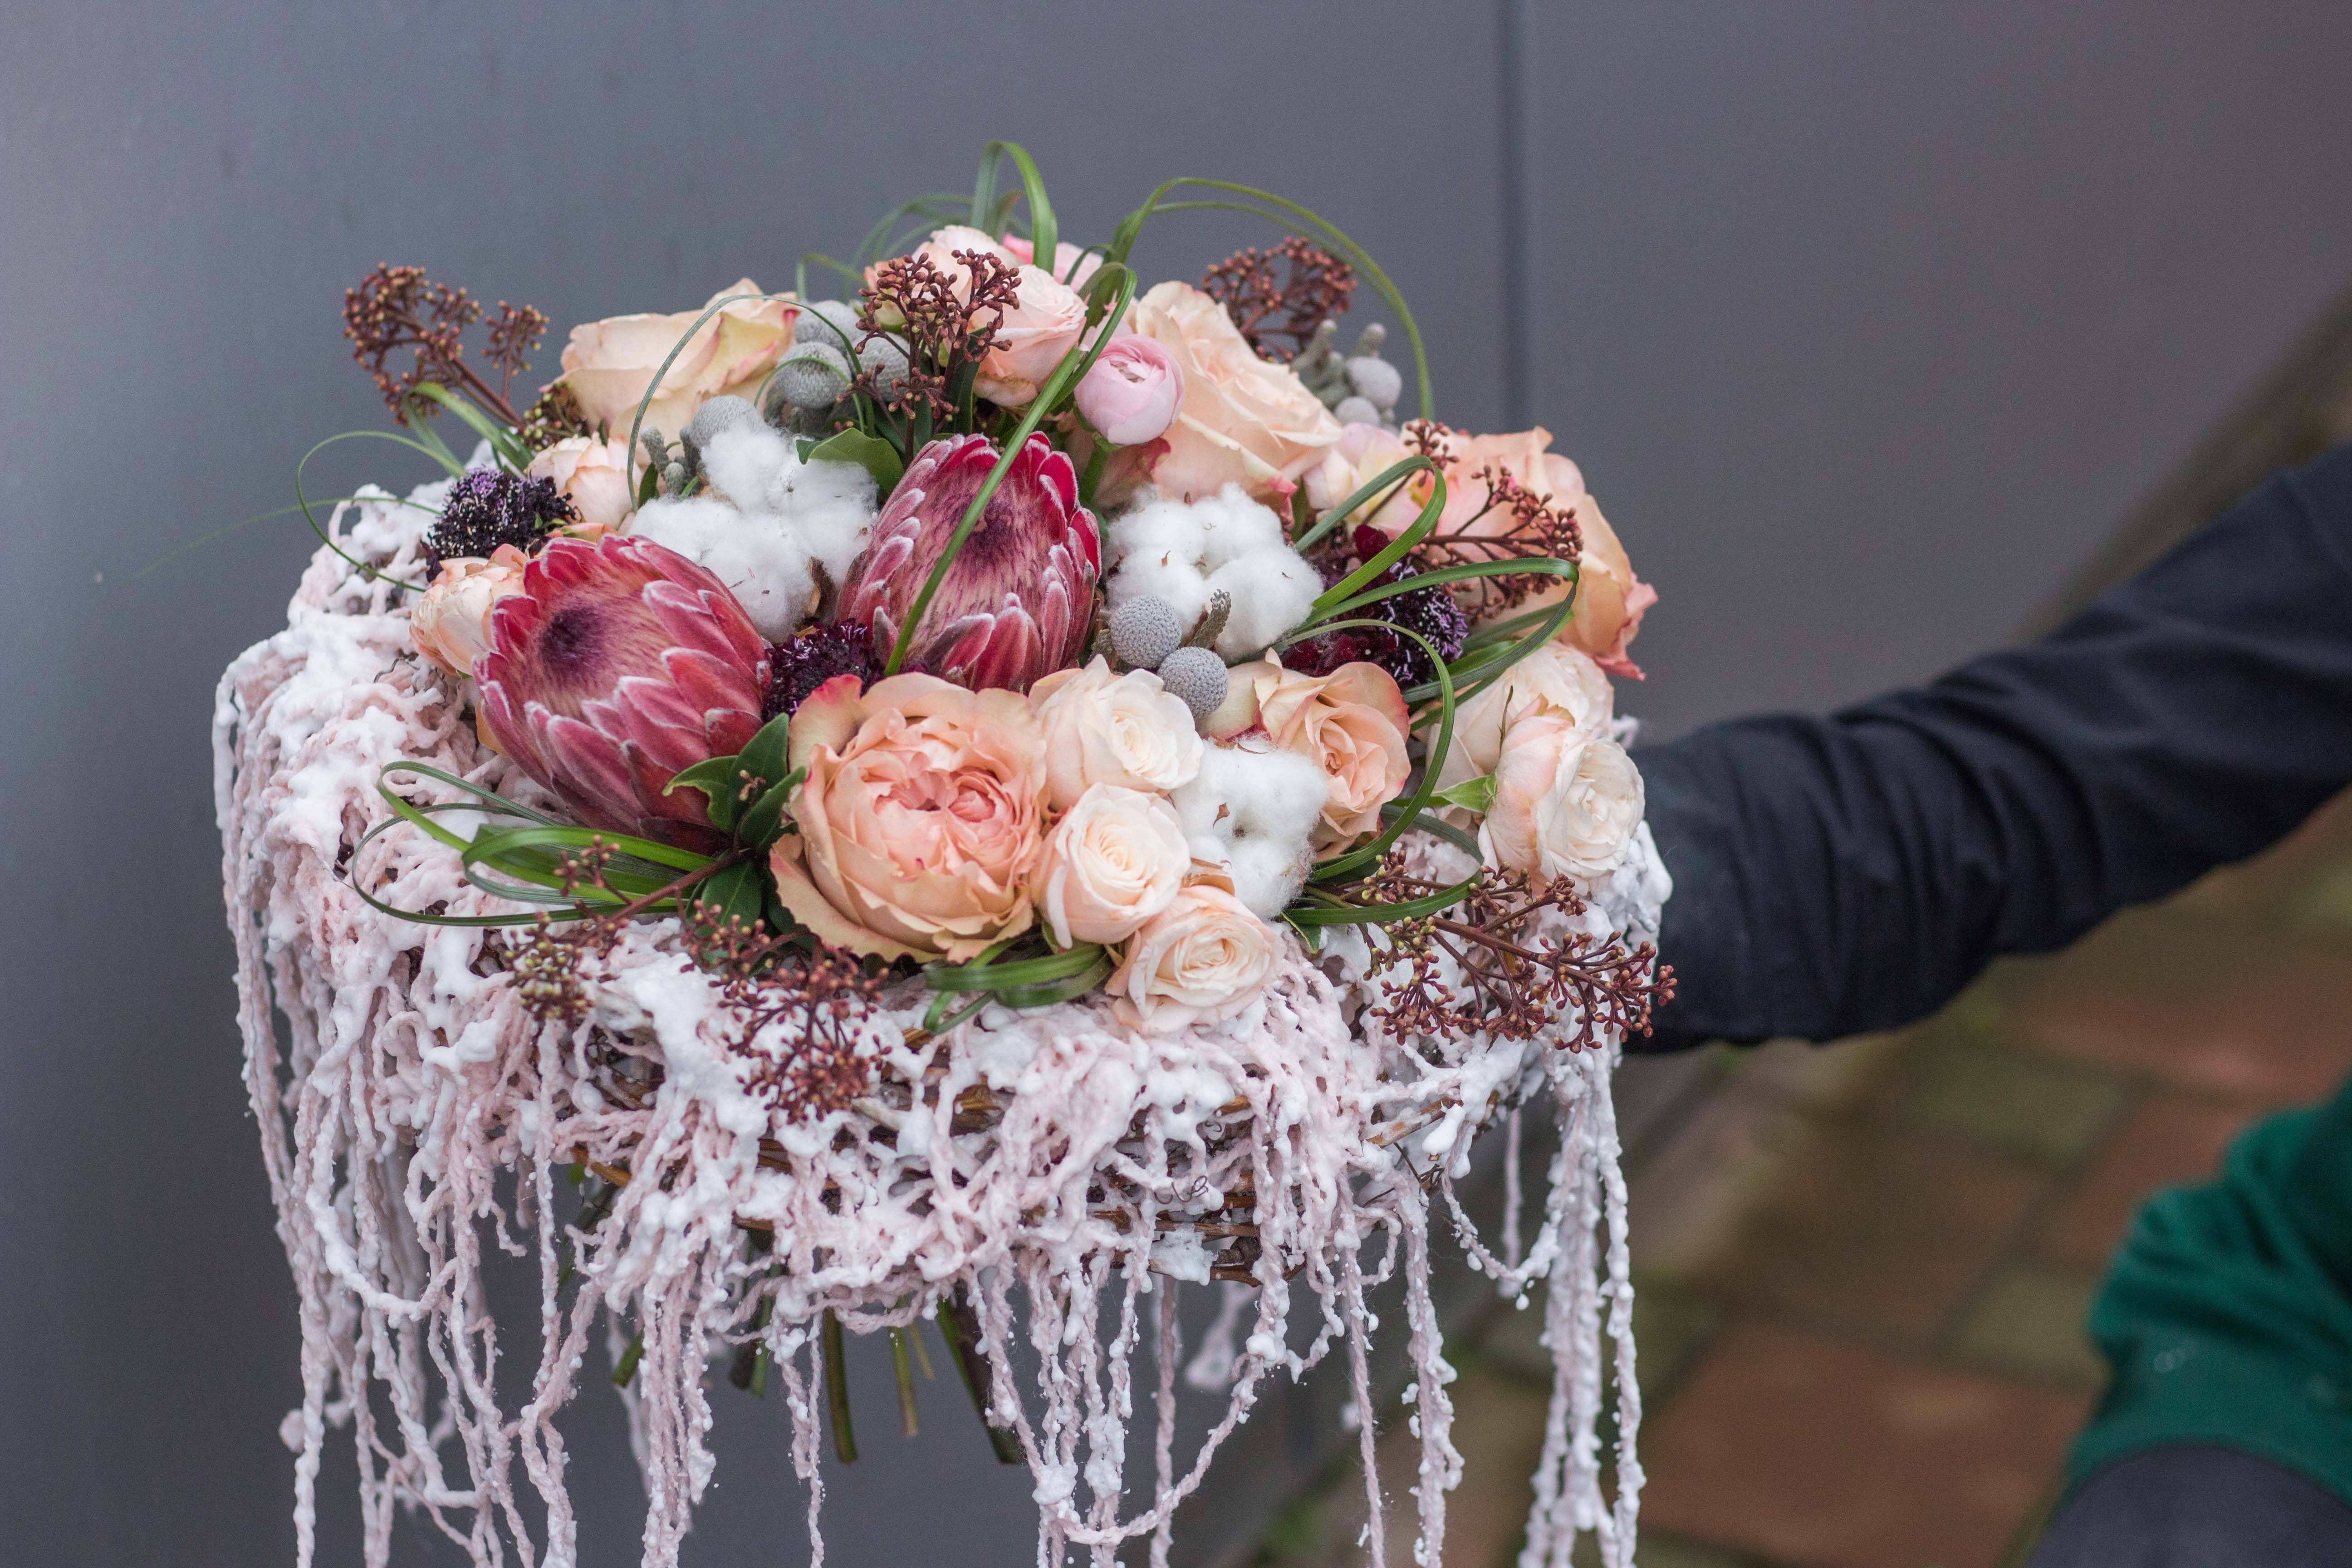 Какой лучше всего выбрать букет для невесты на свадьбу Фото лучших нежных свадебных букетов невесты с яркими цветами Сколько стоит красивый нежный букетик в 2022 году